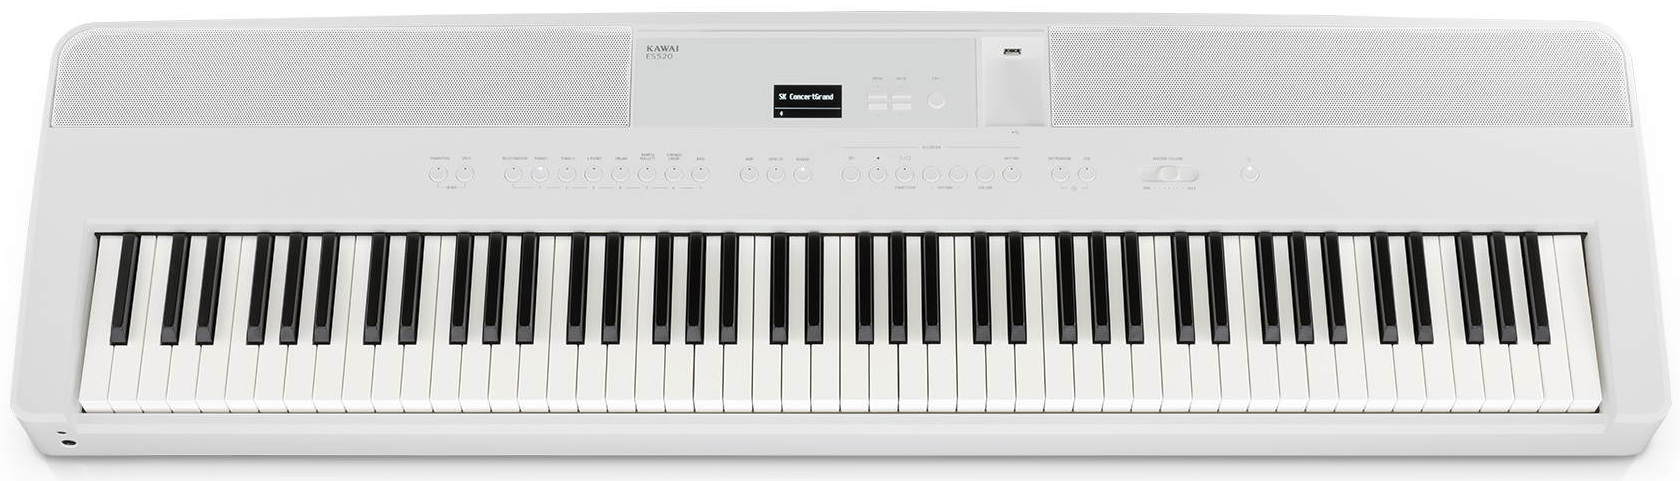 Цифровые пианино Kawai ES520W оптимизм новая программа для улучшения настроения лемайте к